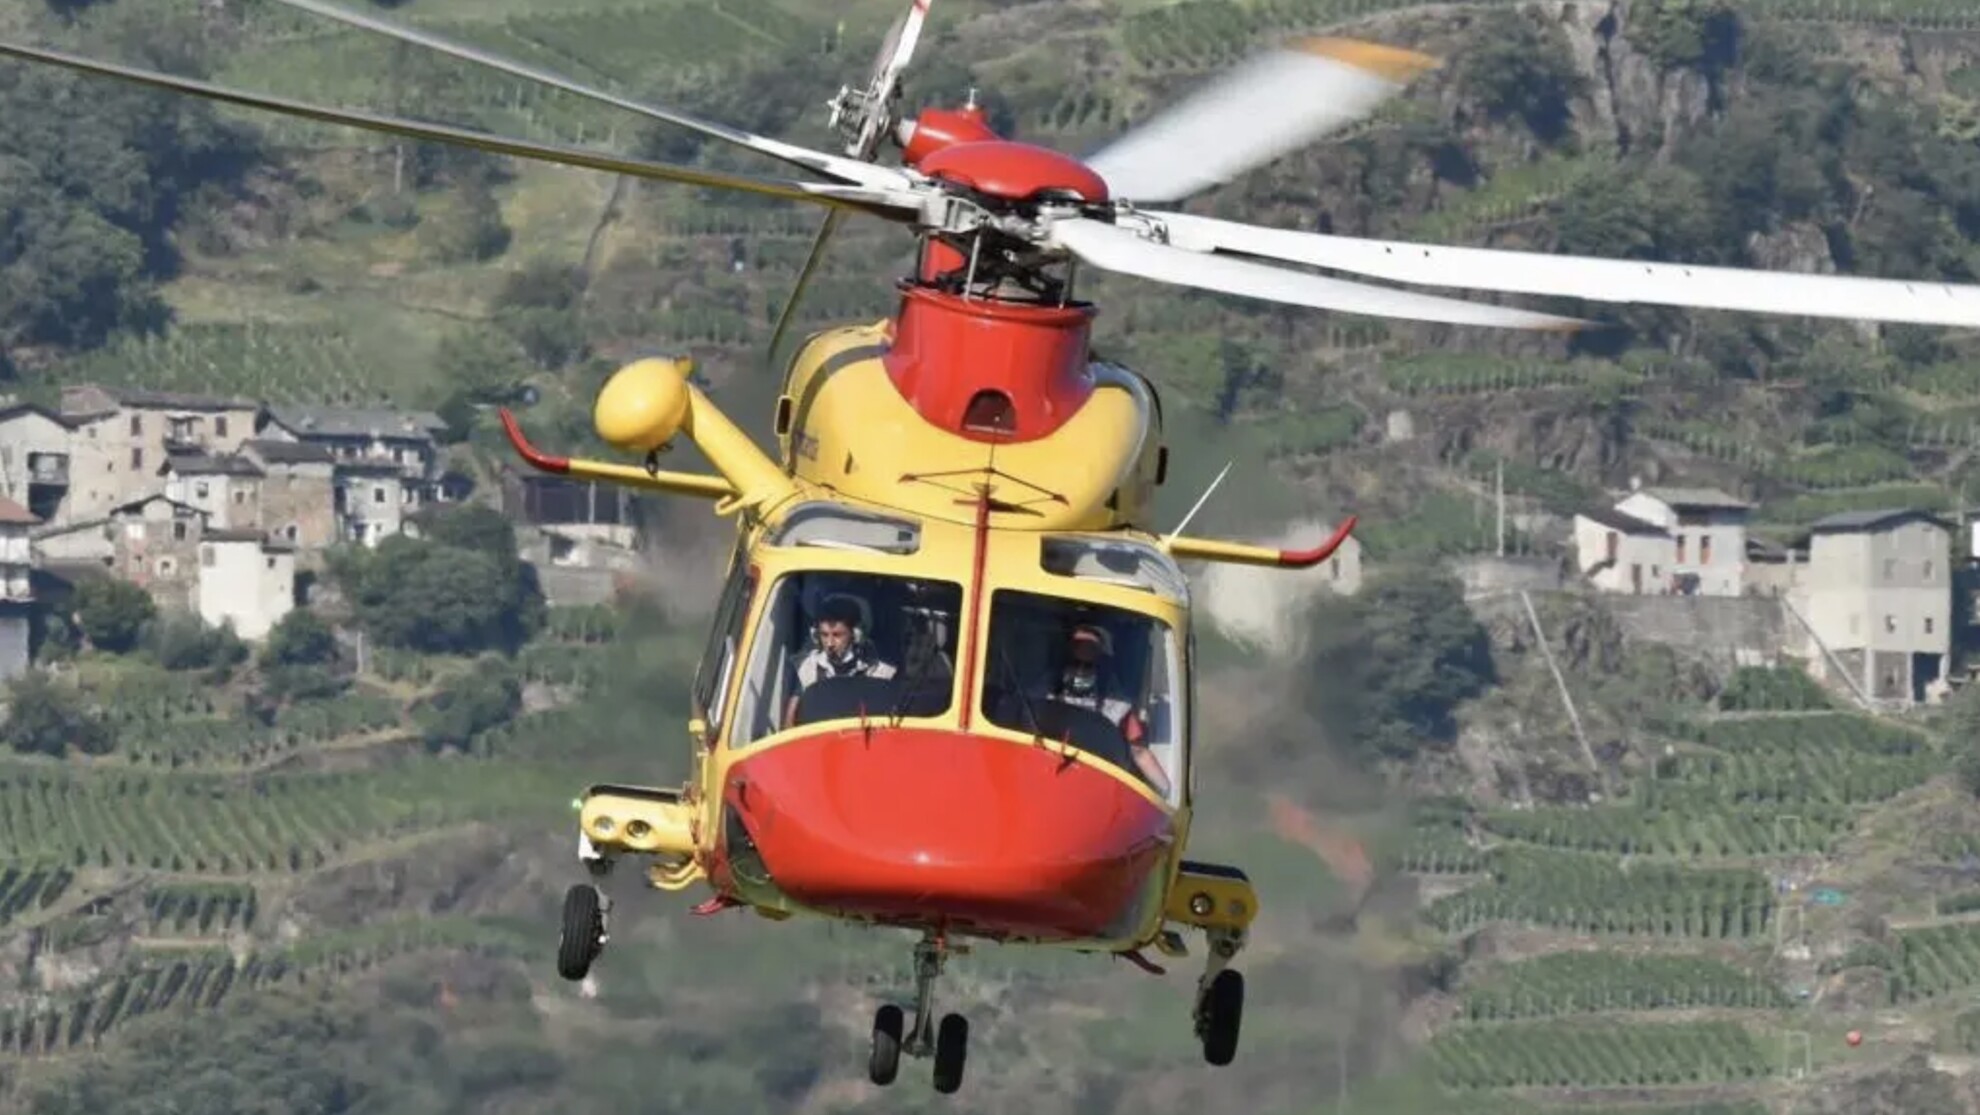 Piloti elicottero: Uiltrasporti accordo su adeguamento salariale Ccnl